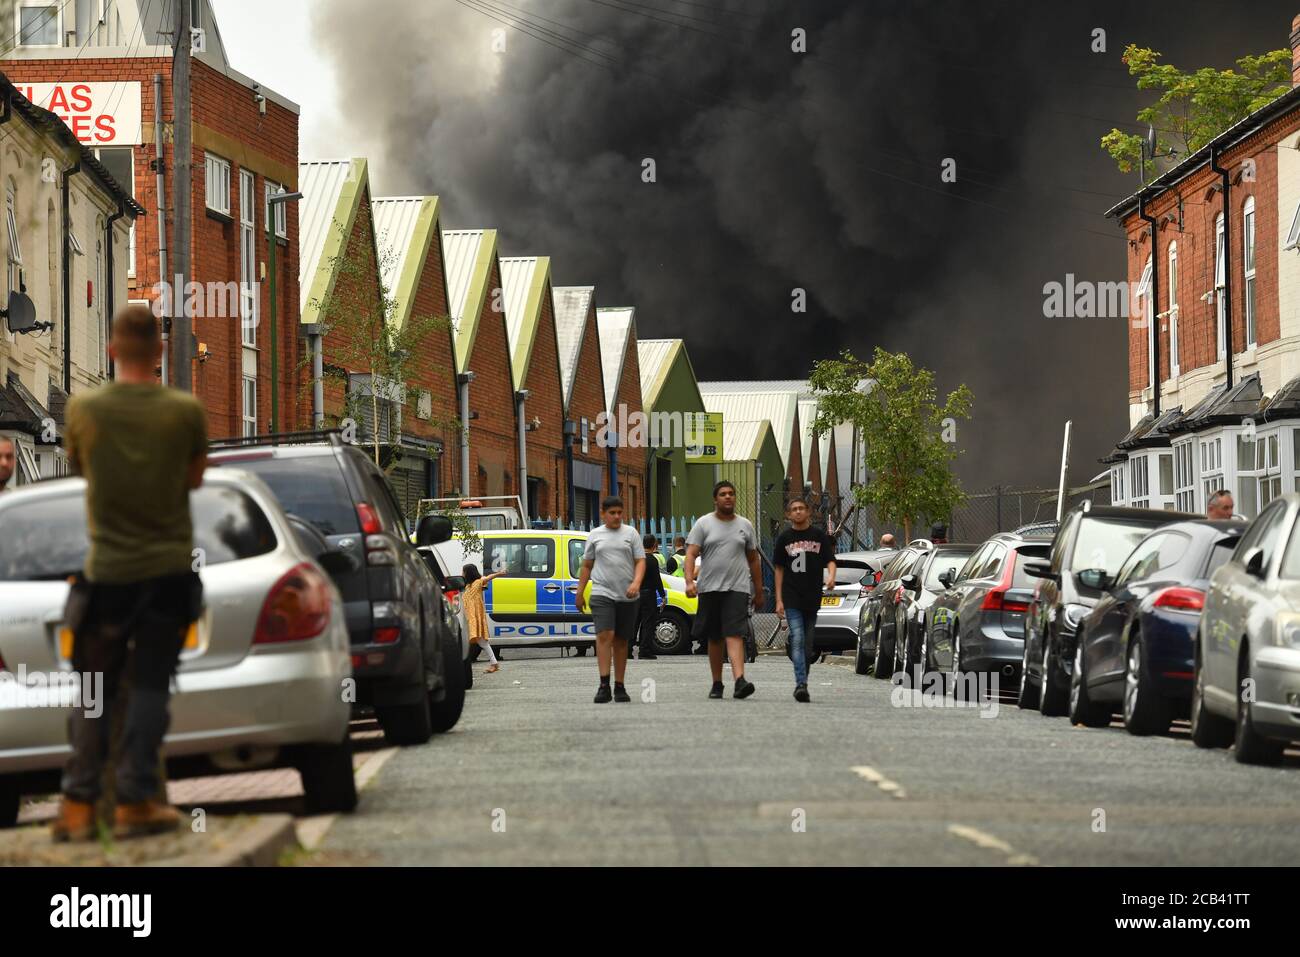 Rauch wabert von einem schweren Brand auf einem Industriegebiet in Birmingham. Crews von 10 Feuerwehrfahrzeugen bekämpfen das Feuer. Stockfoto